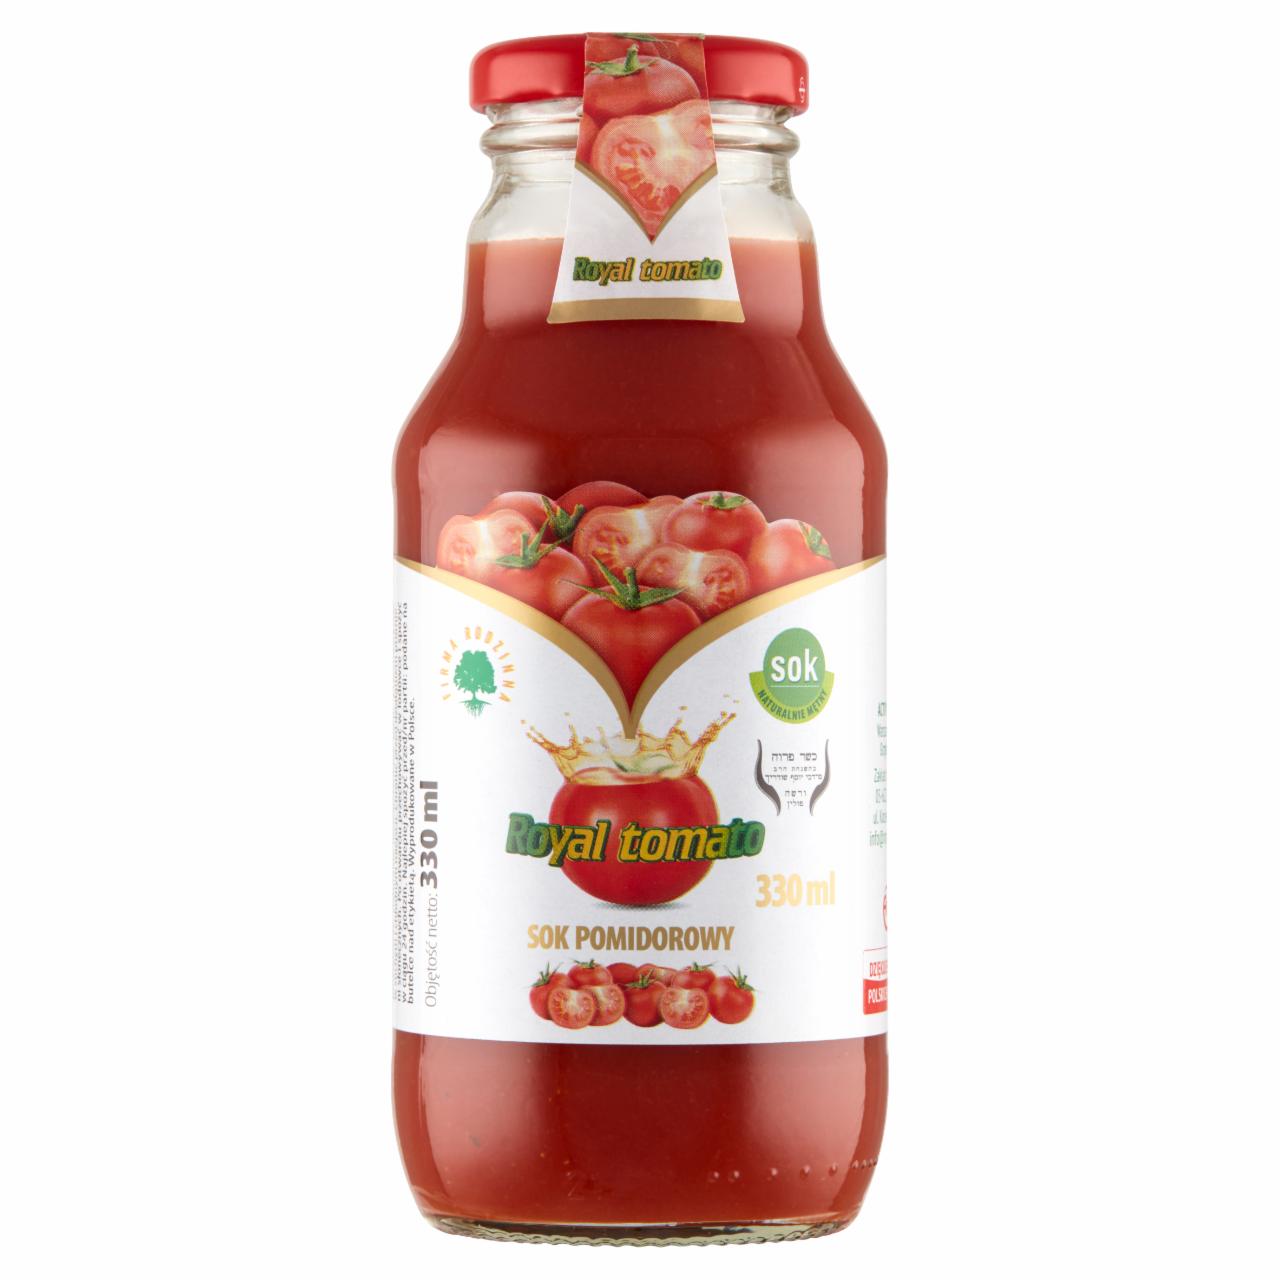 Zdjęcia - Royal tomato Sok pomidorowy 330 ml